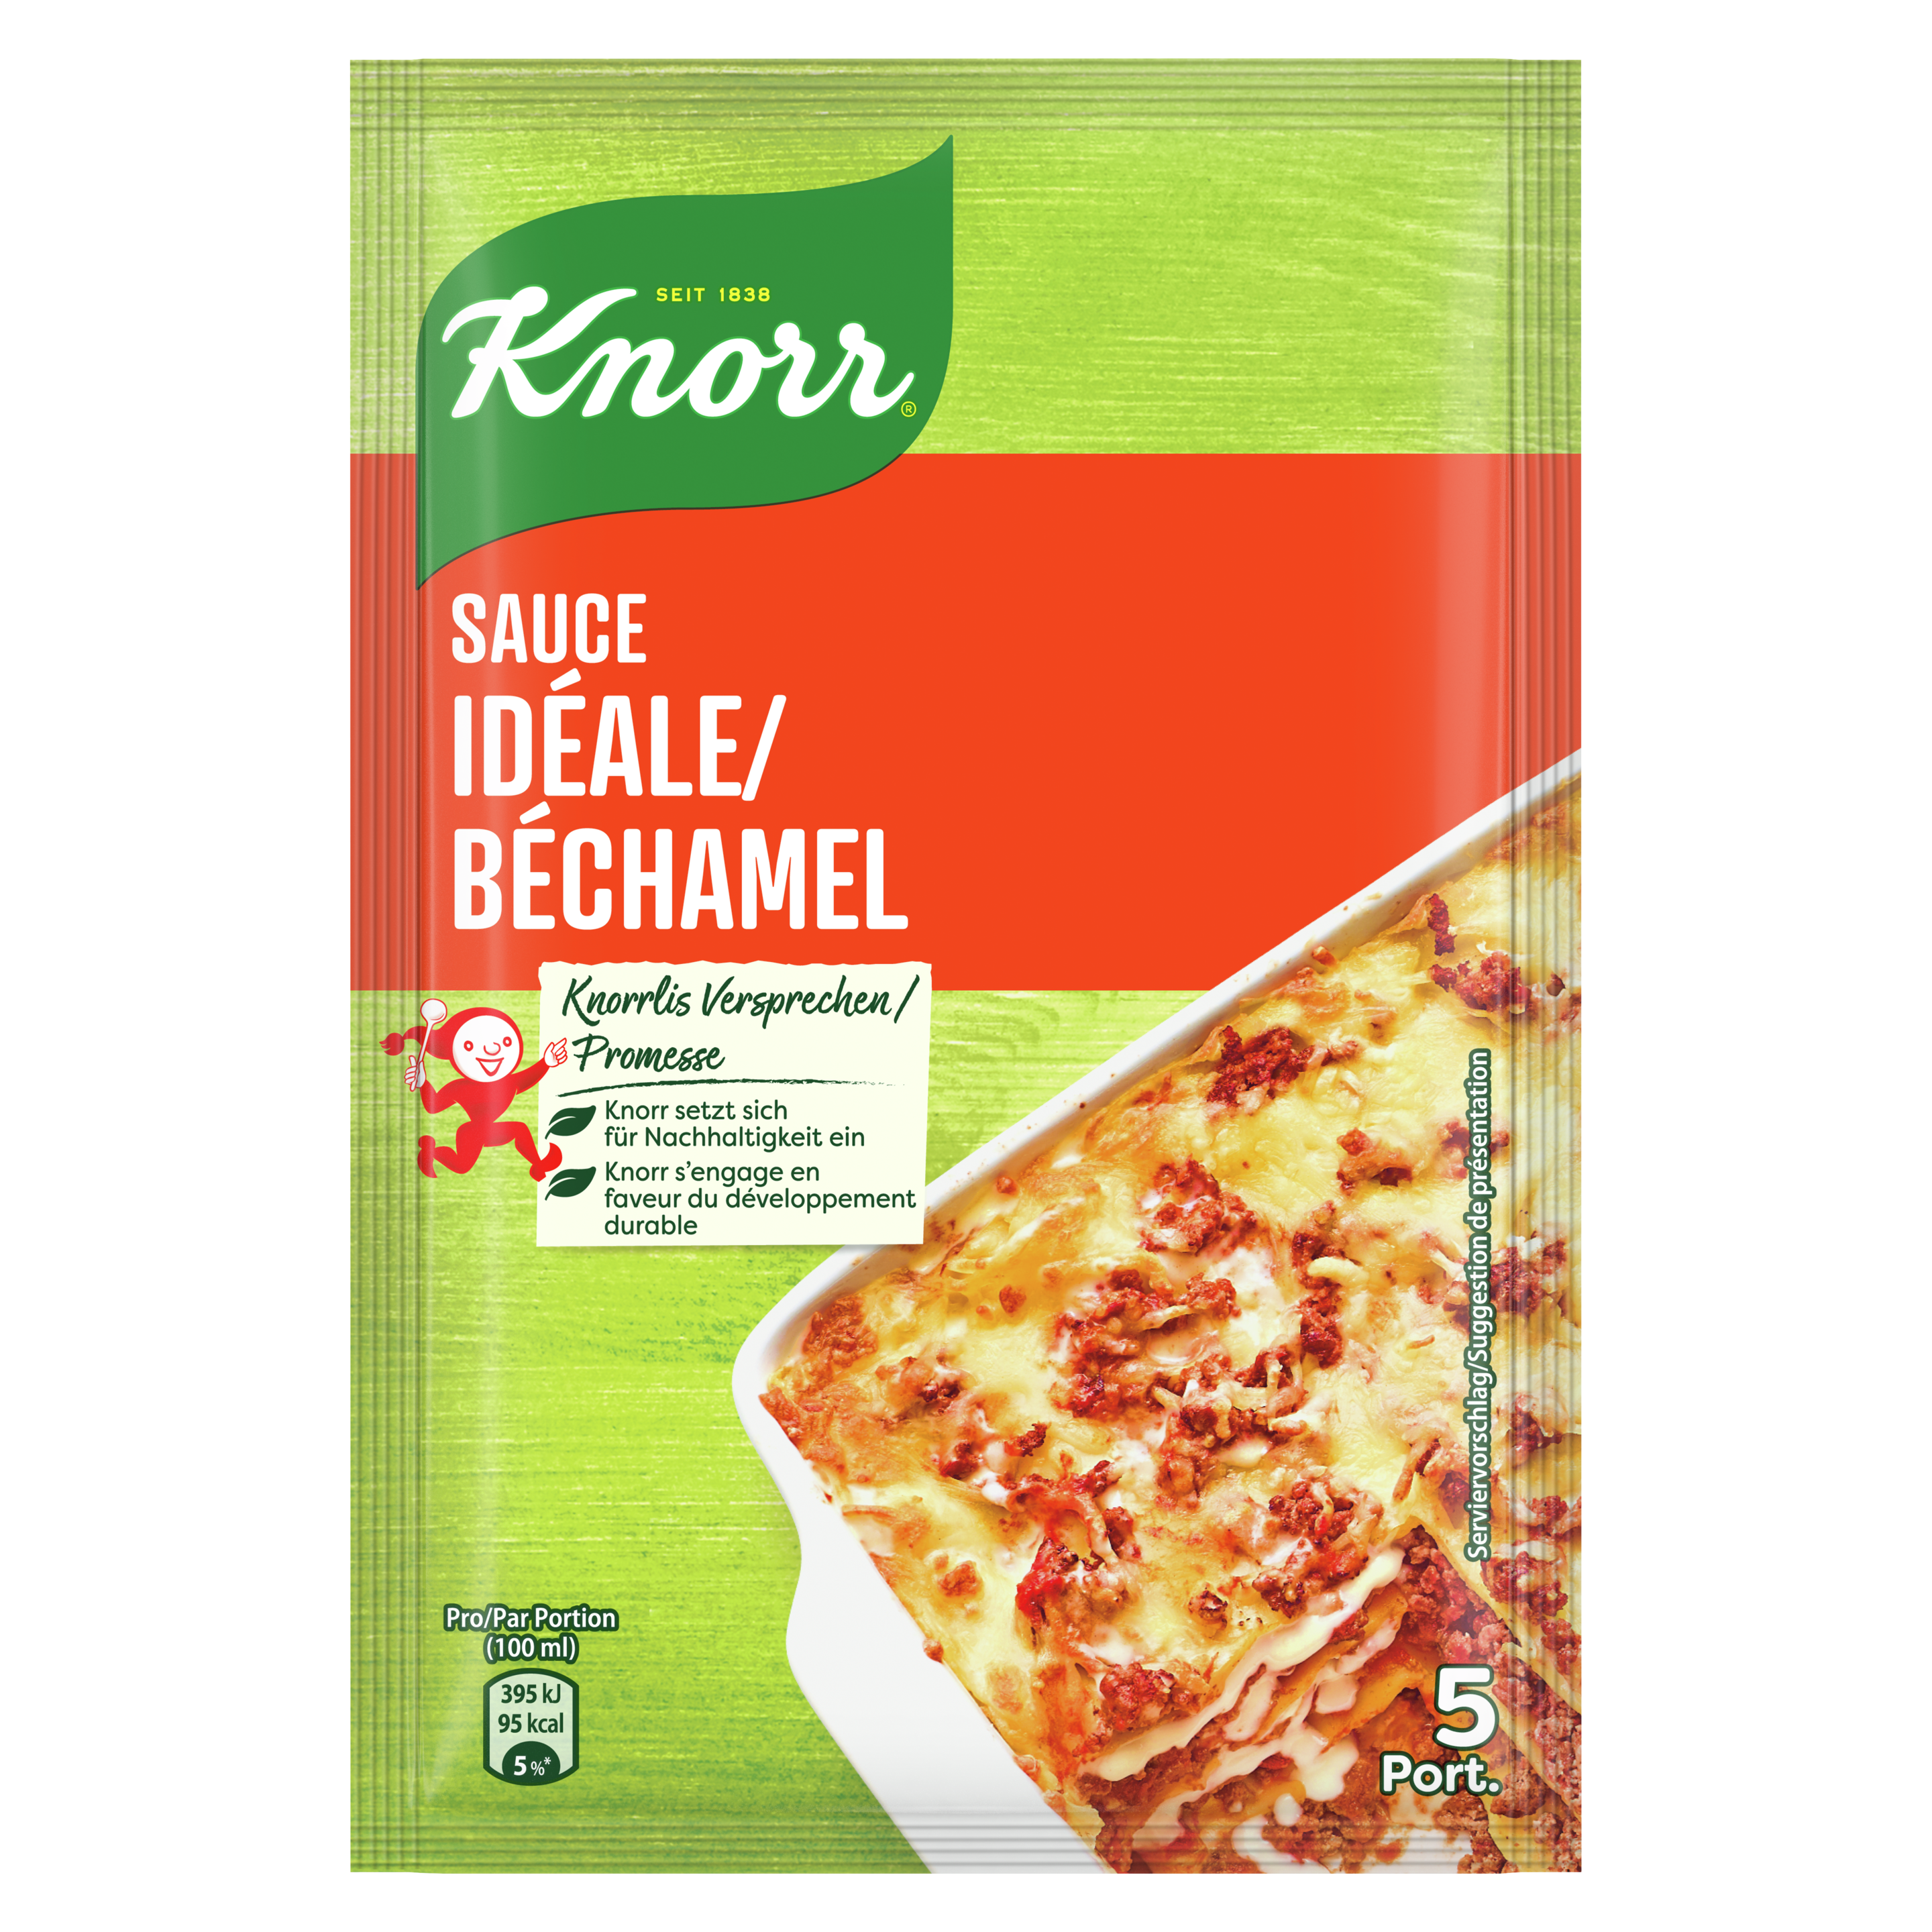 KNORR Sauce idéale / béchamel sachet 3 portions